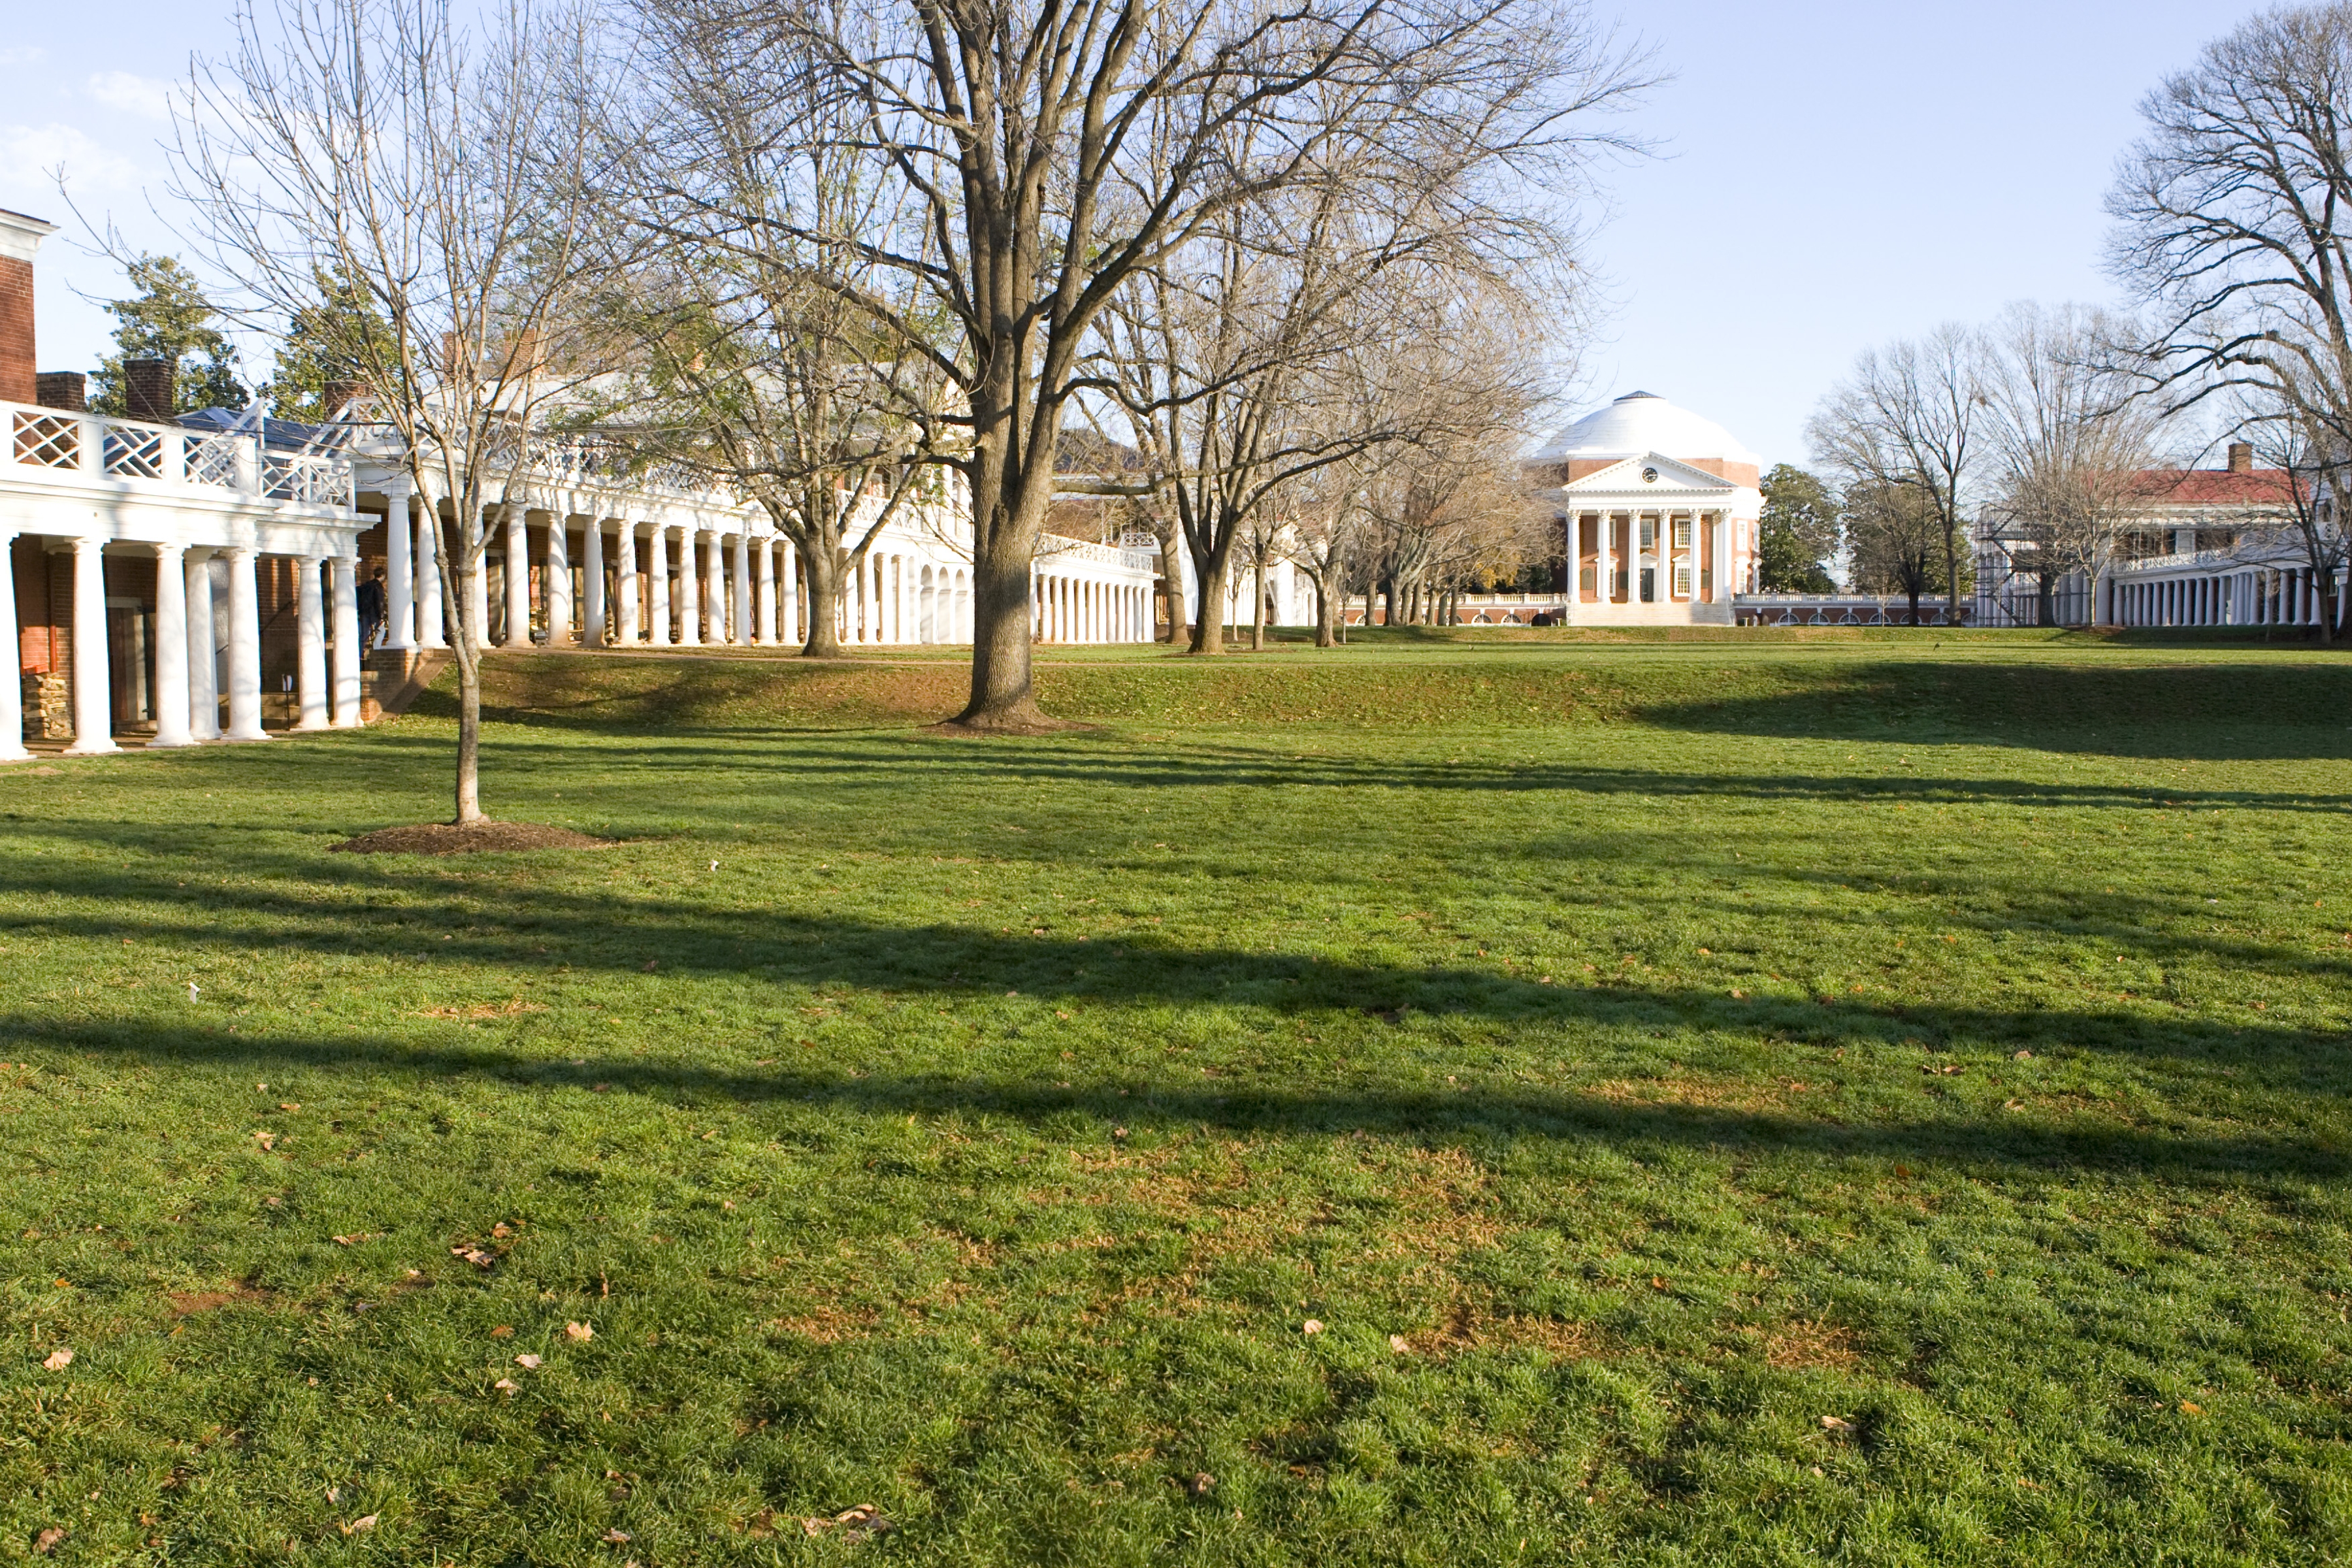 UVA's Lawn and Rotunda